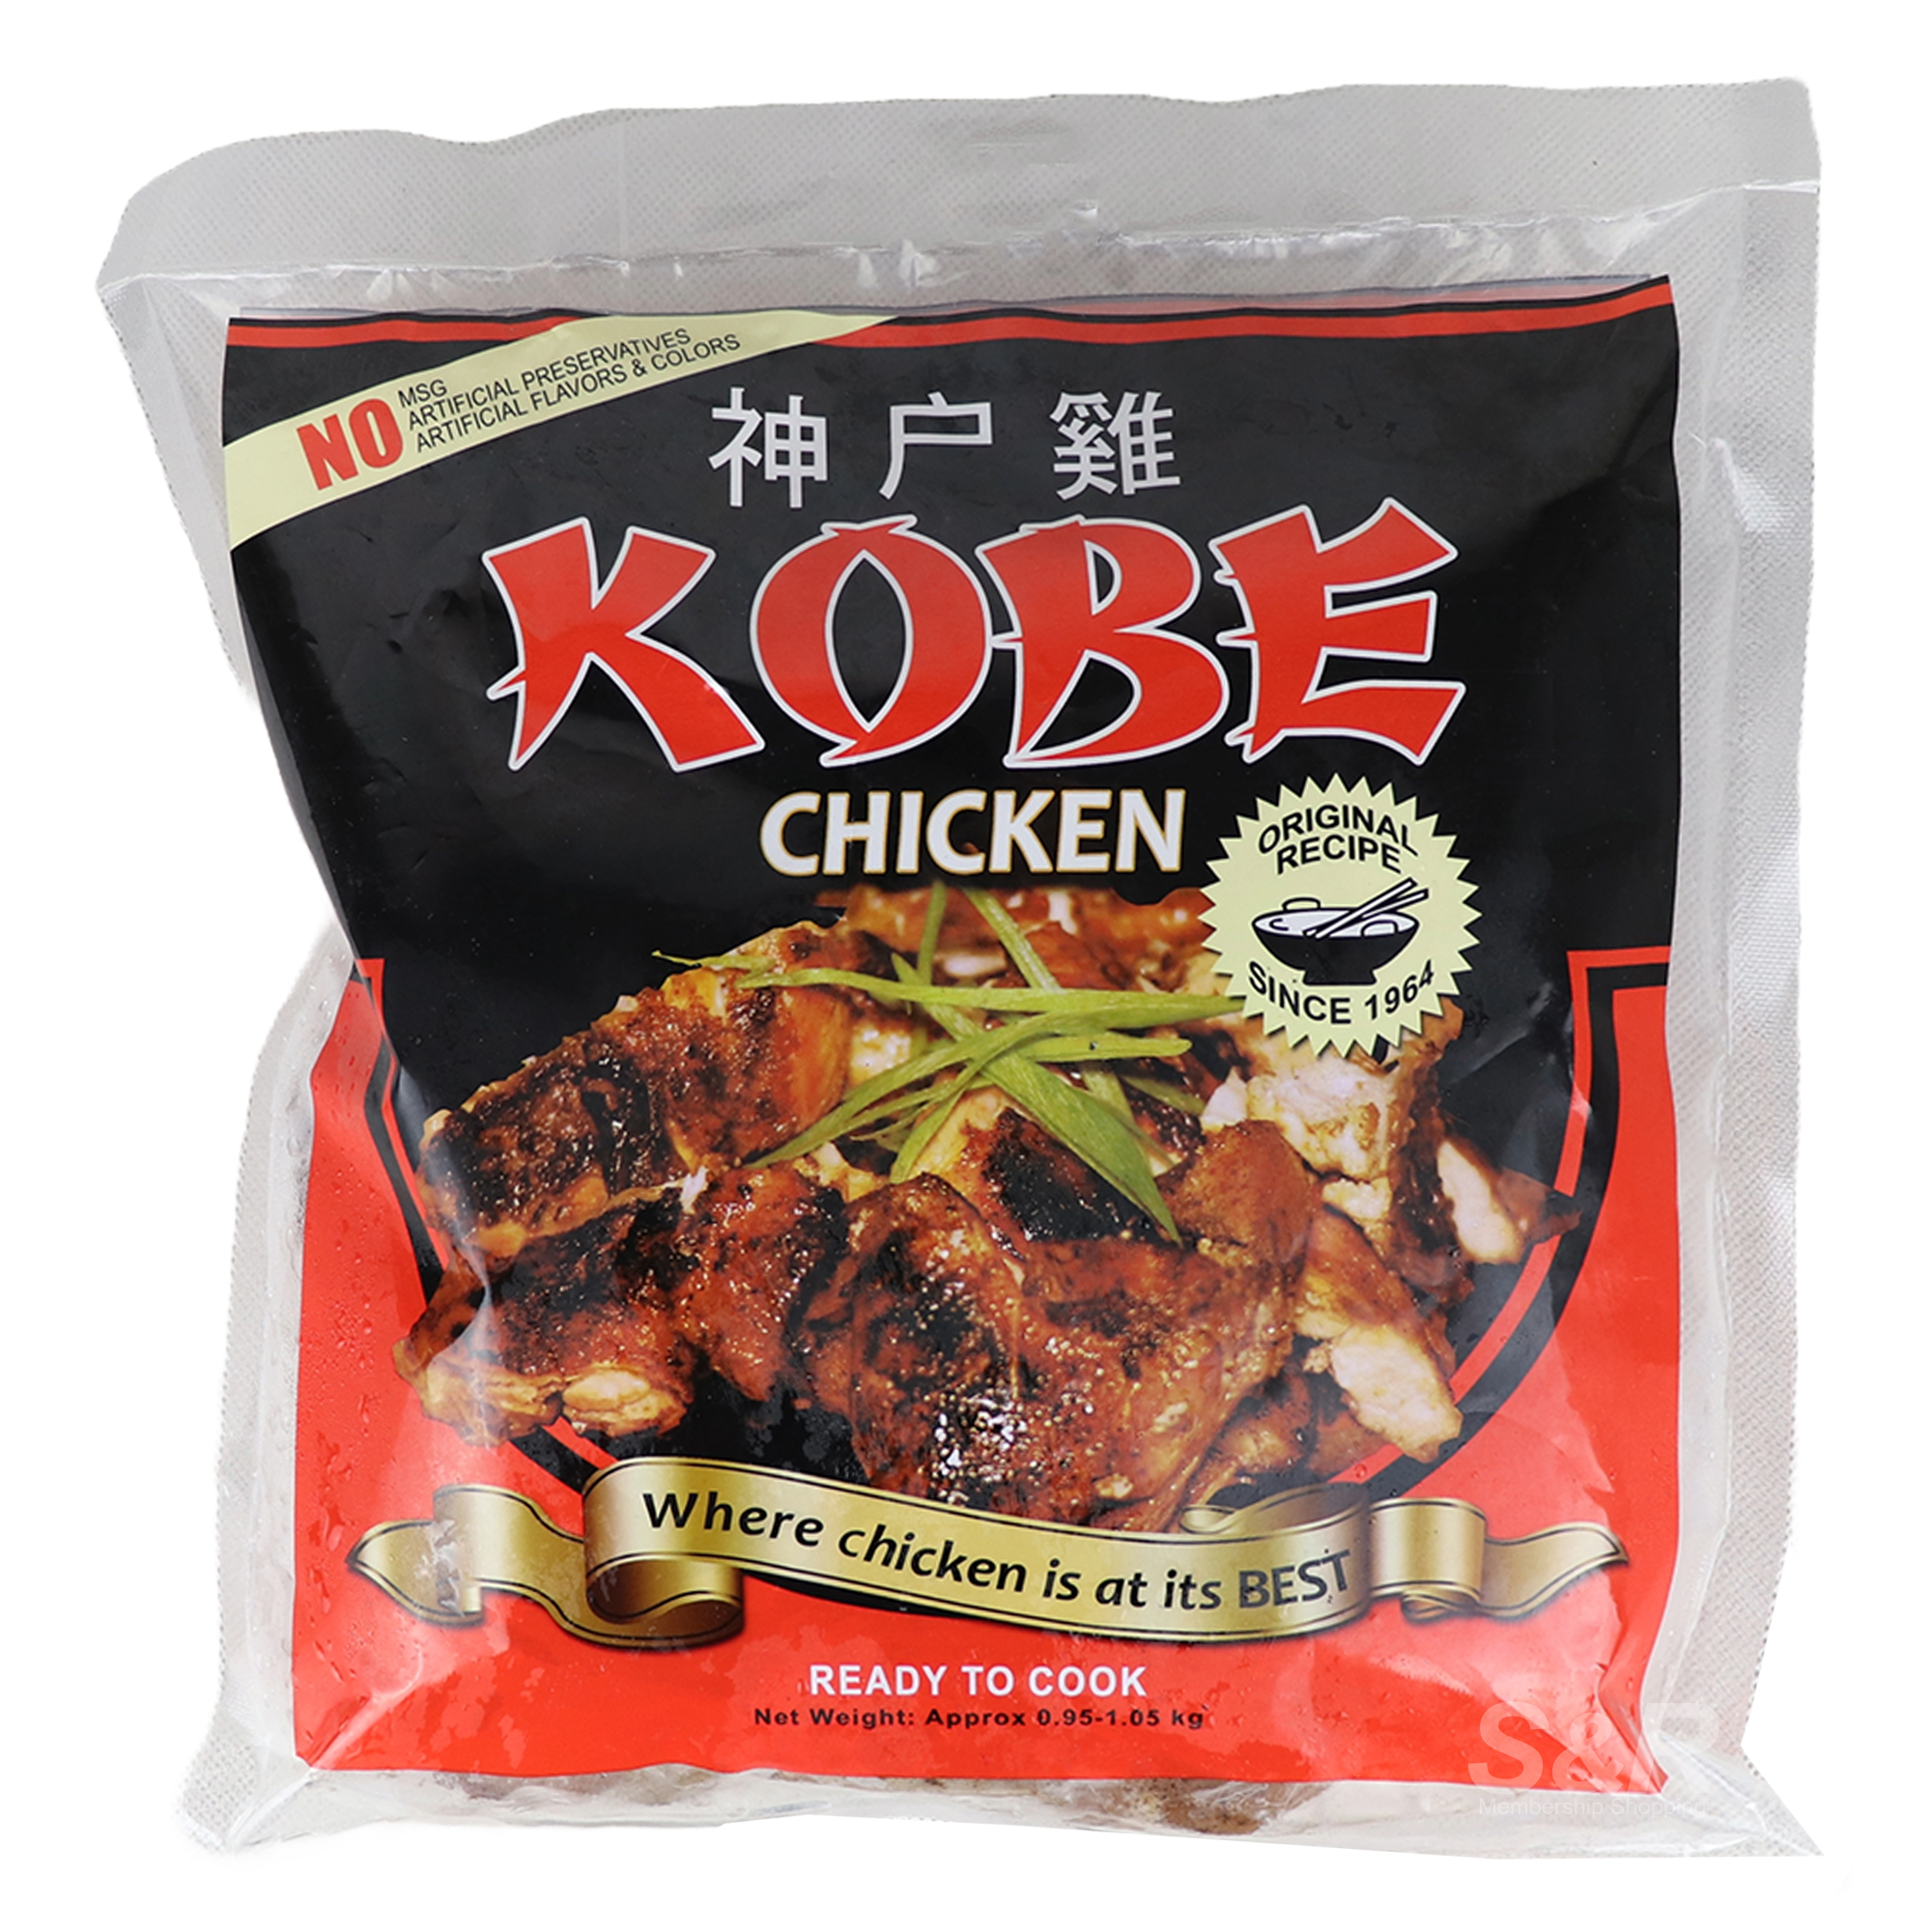 Kobe Chicken 0.95-1.05kg